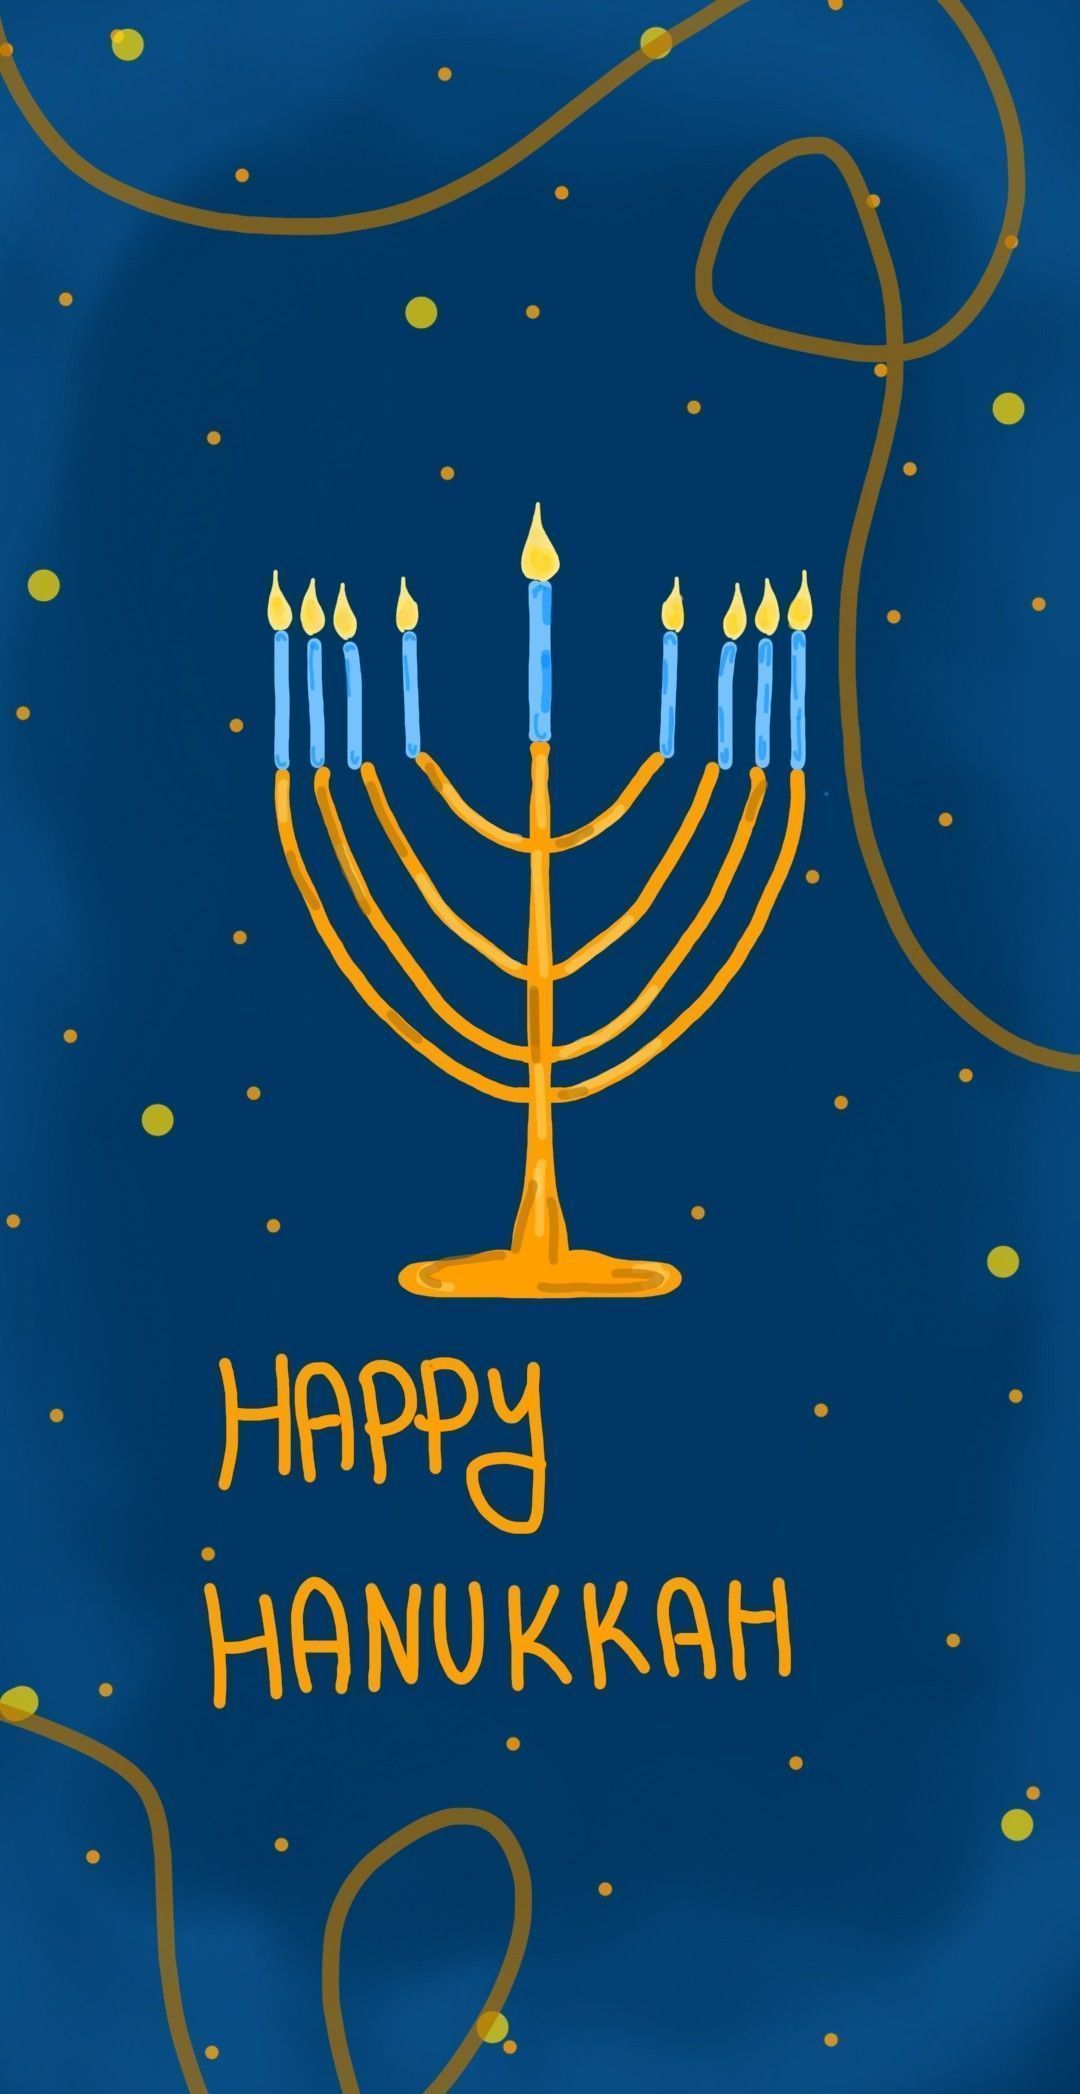 Hanukkah Wallpaper Holidays